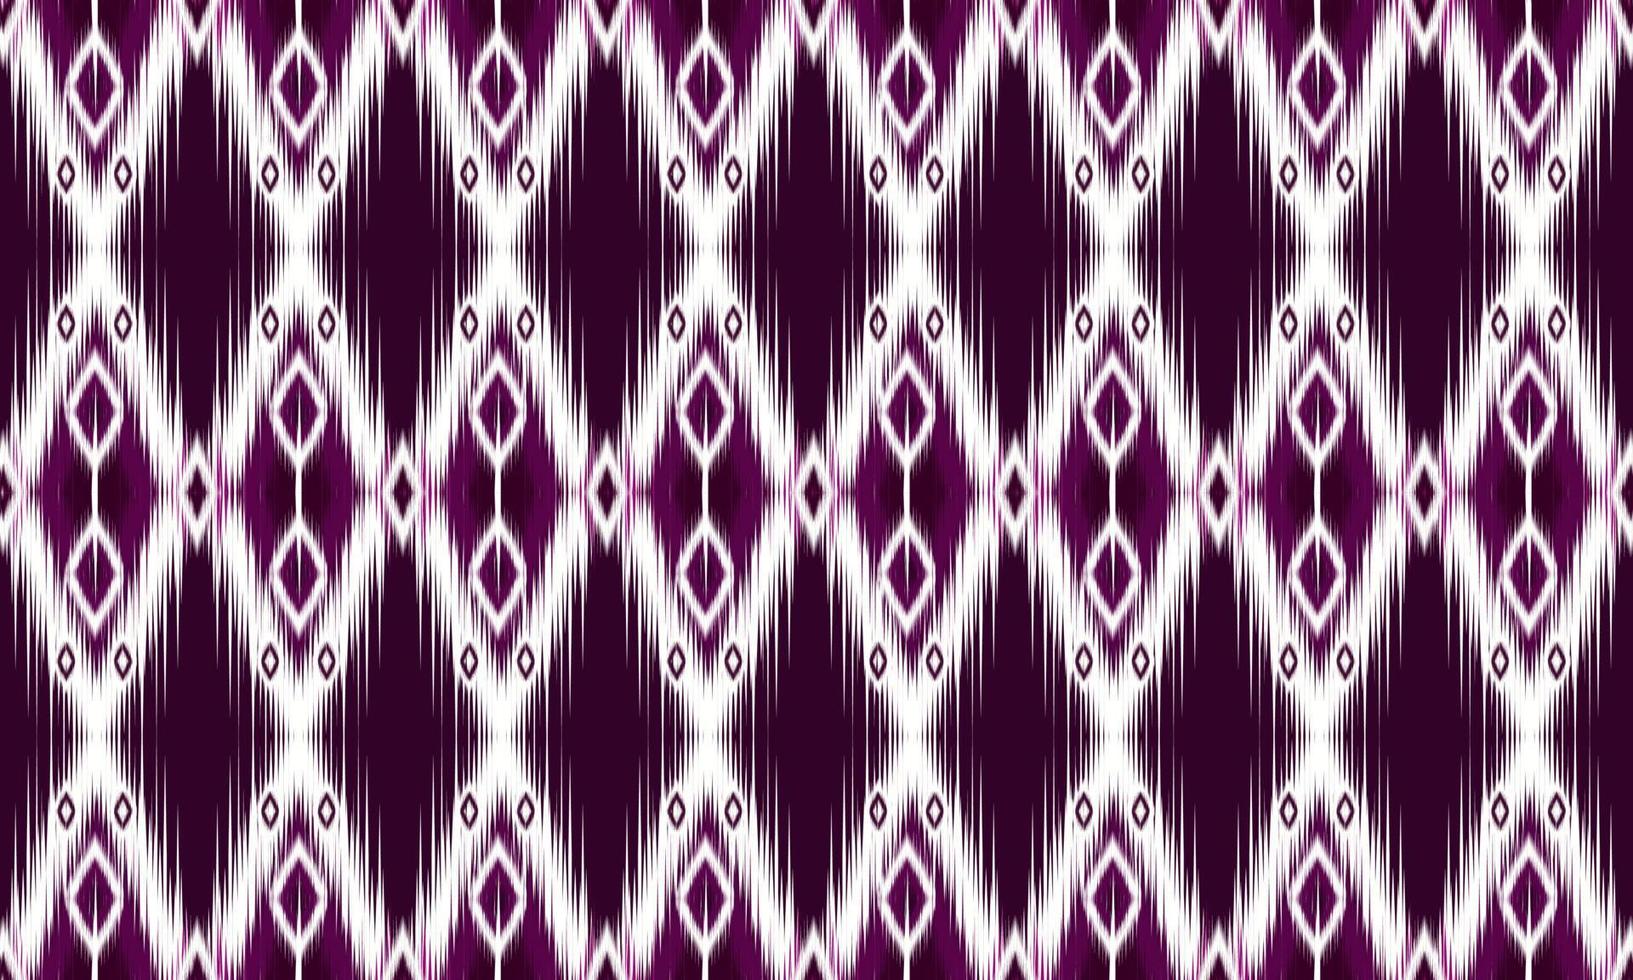 geometrische ethnische orientalische Muster traditionelles Design für Hintergrund, Teppich, Tapete, Kleidung, Verpackung, Batik, Stoff, Vektorillustration. Stickerei-Stil. vektor